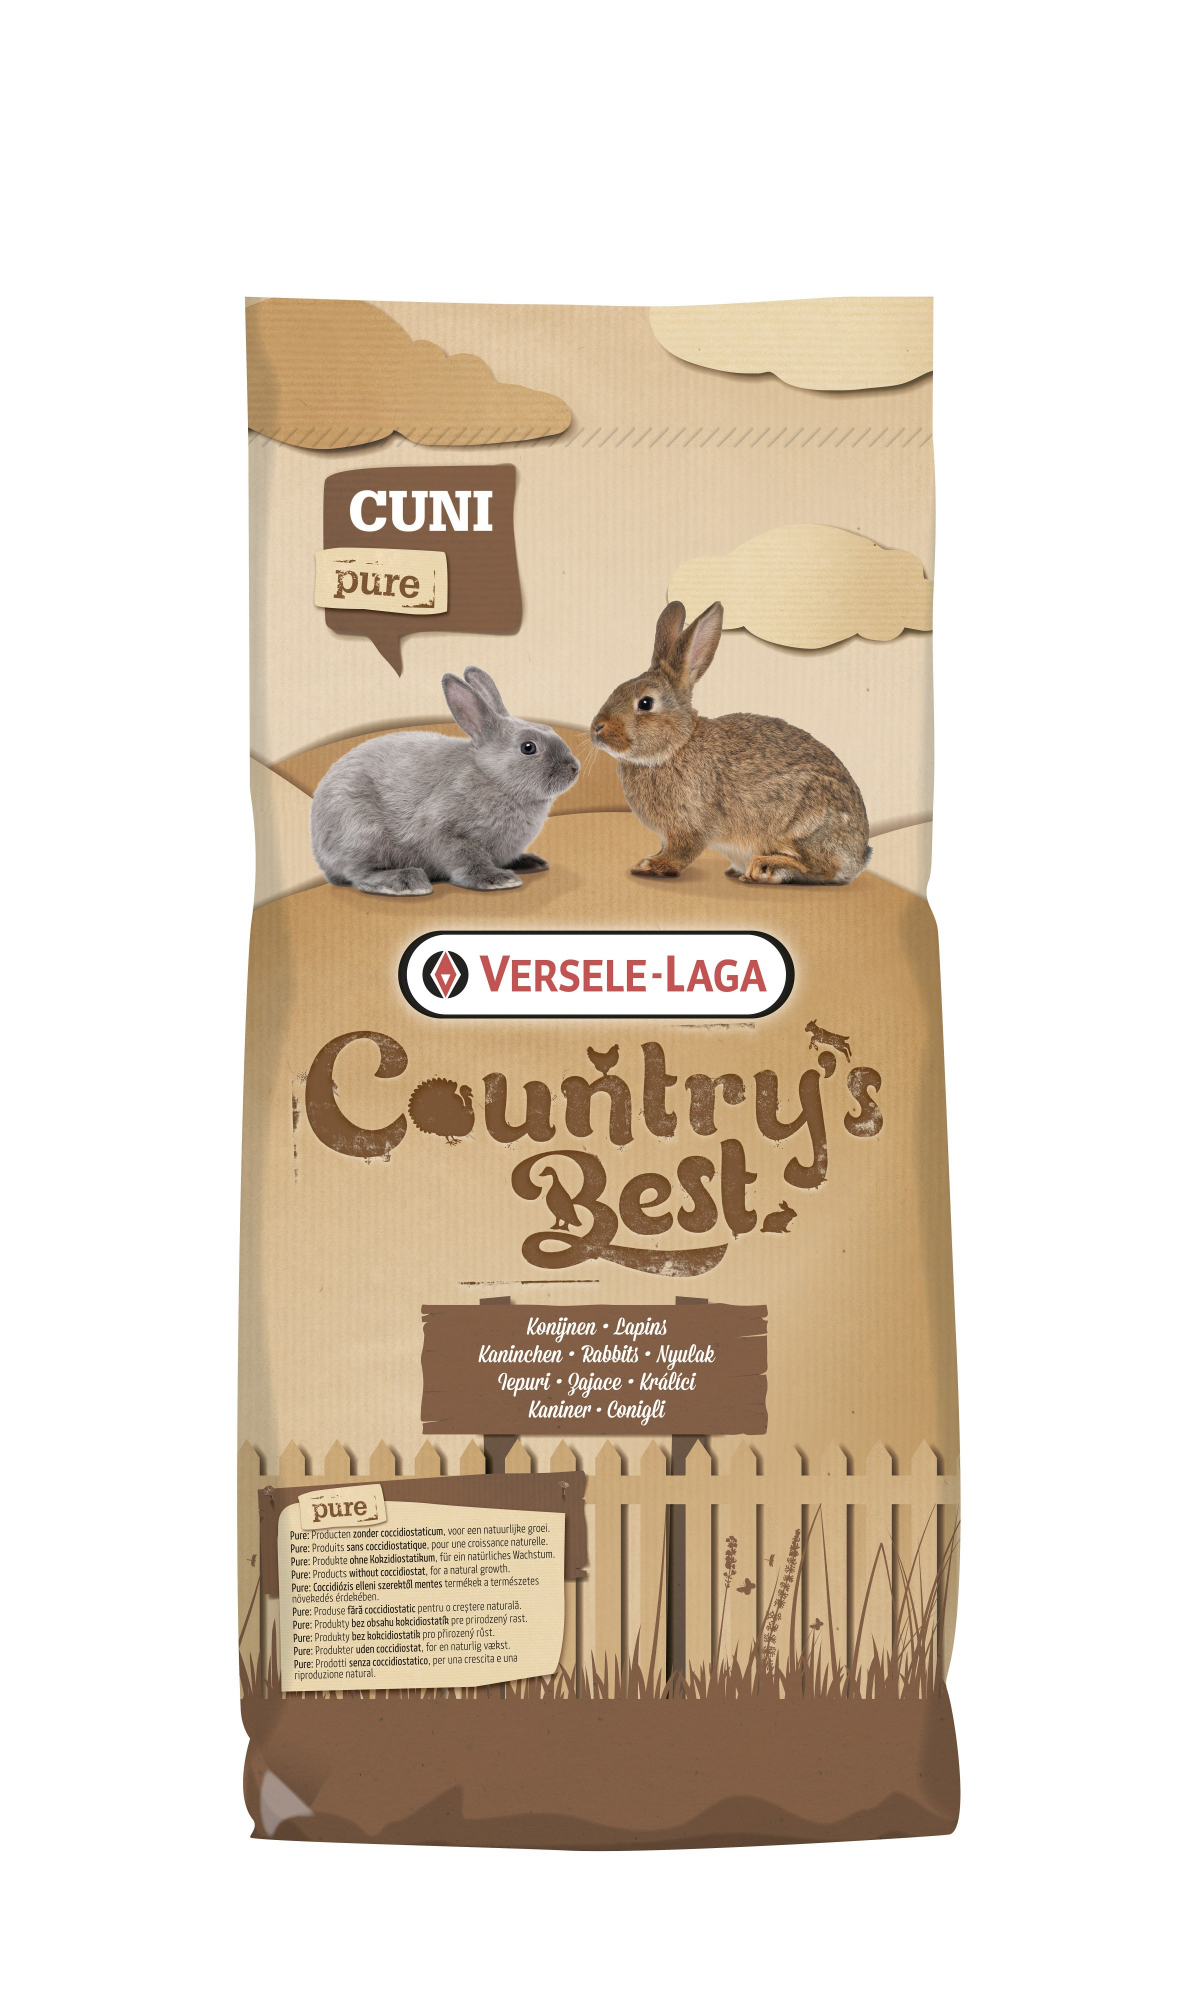 Cuni Top Pure Country's Best Granuli energetici per conigli